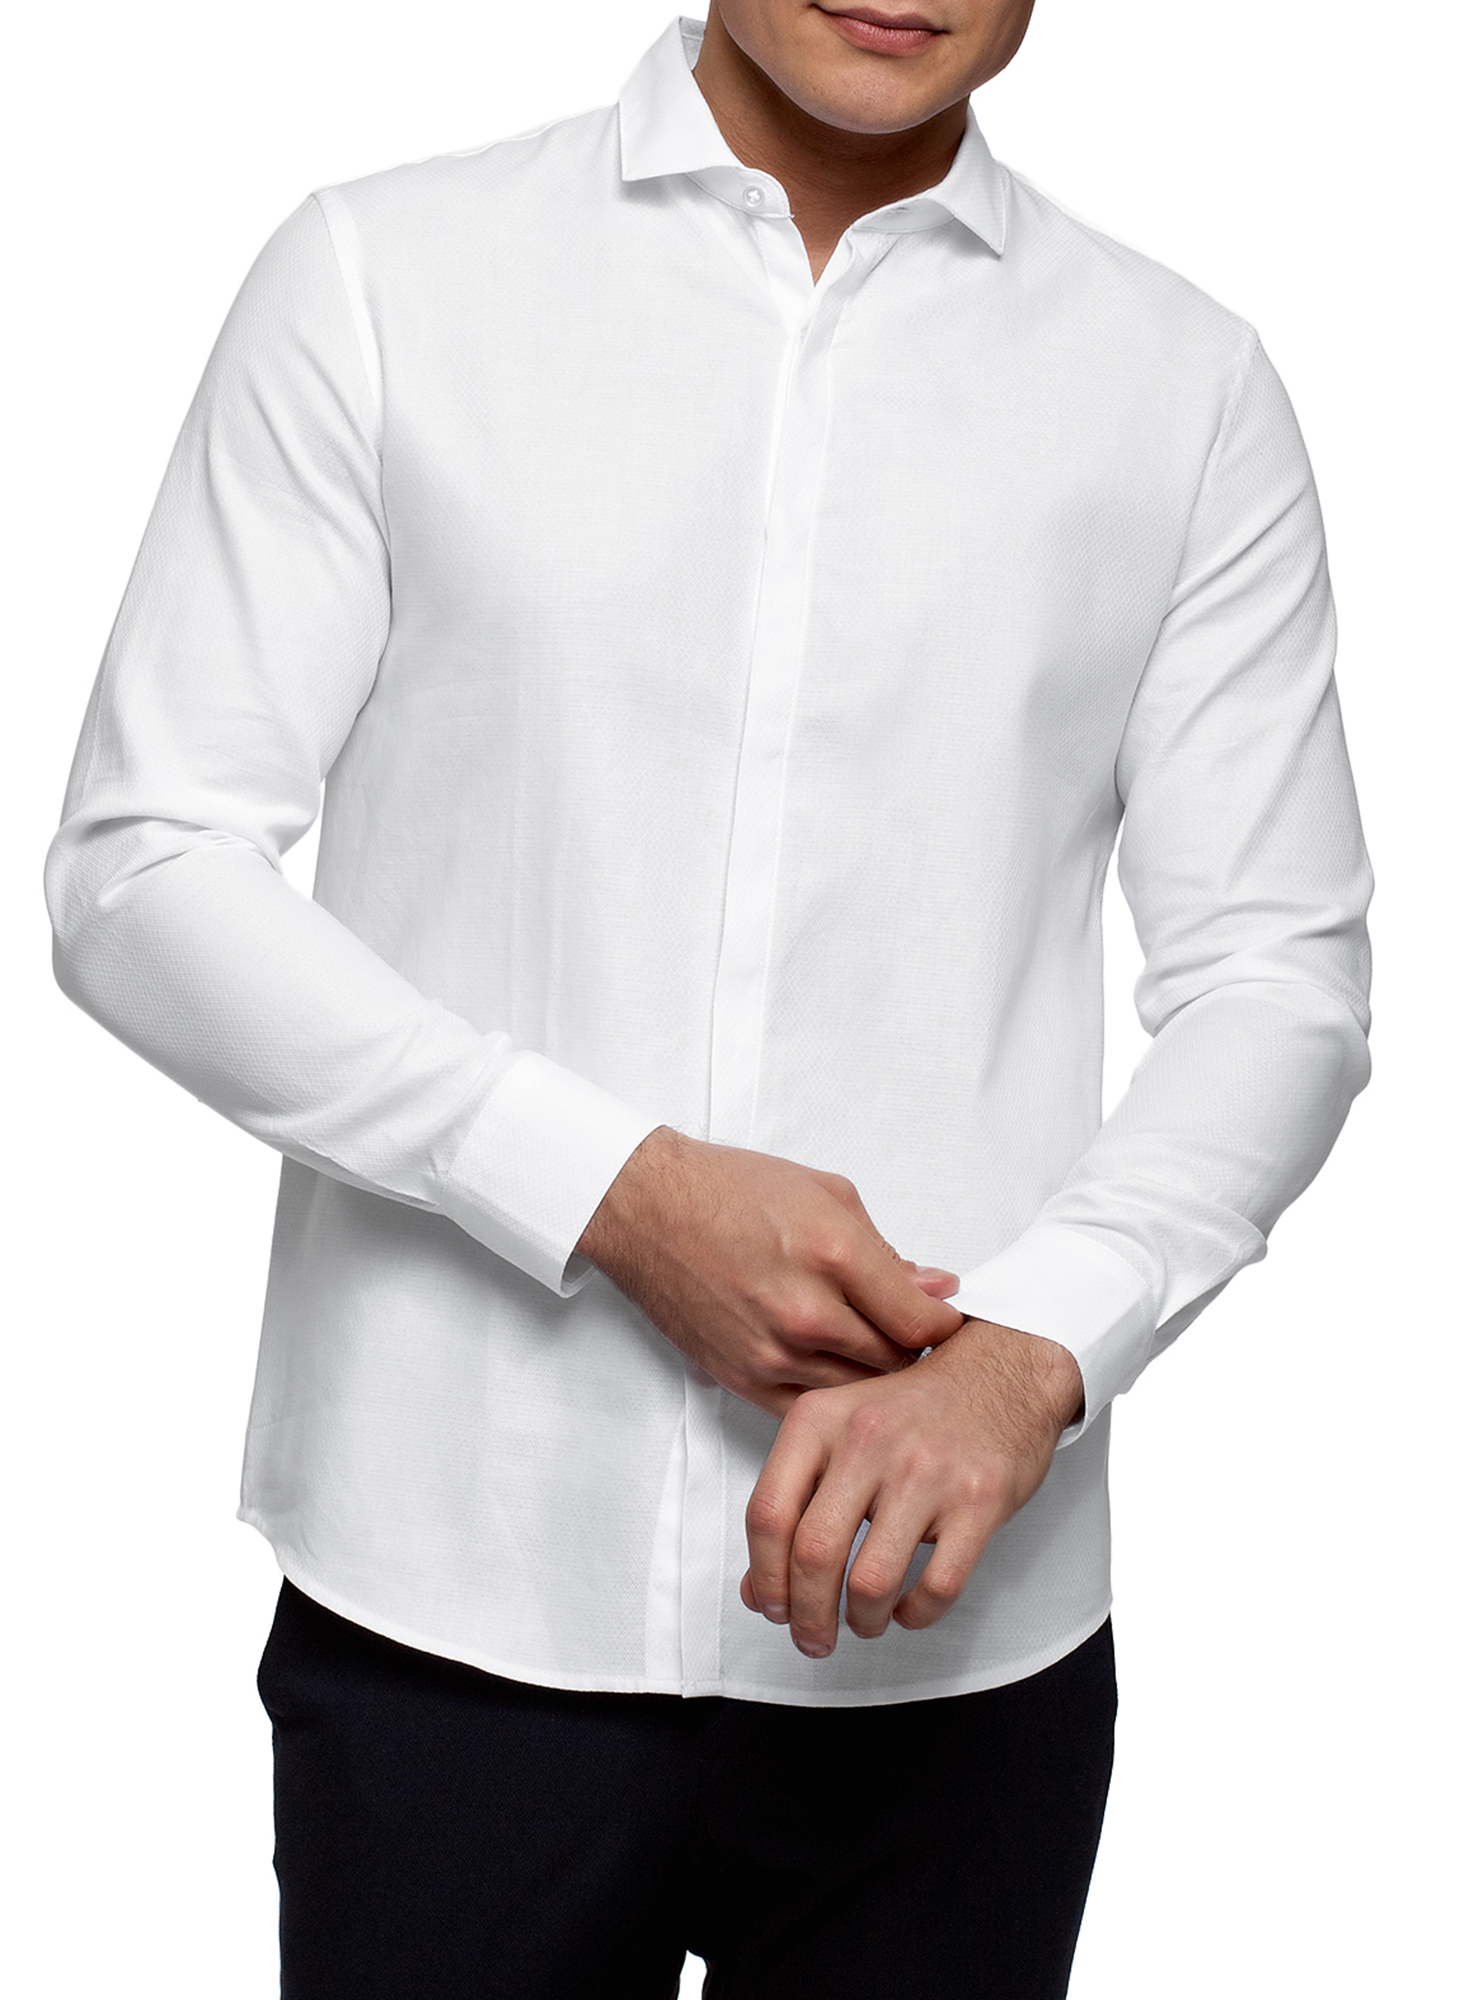 Рубашка мужская oodji 3B110017M-4 белая 2XL